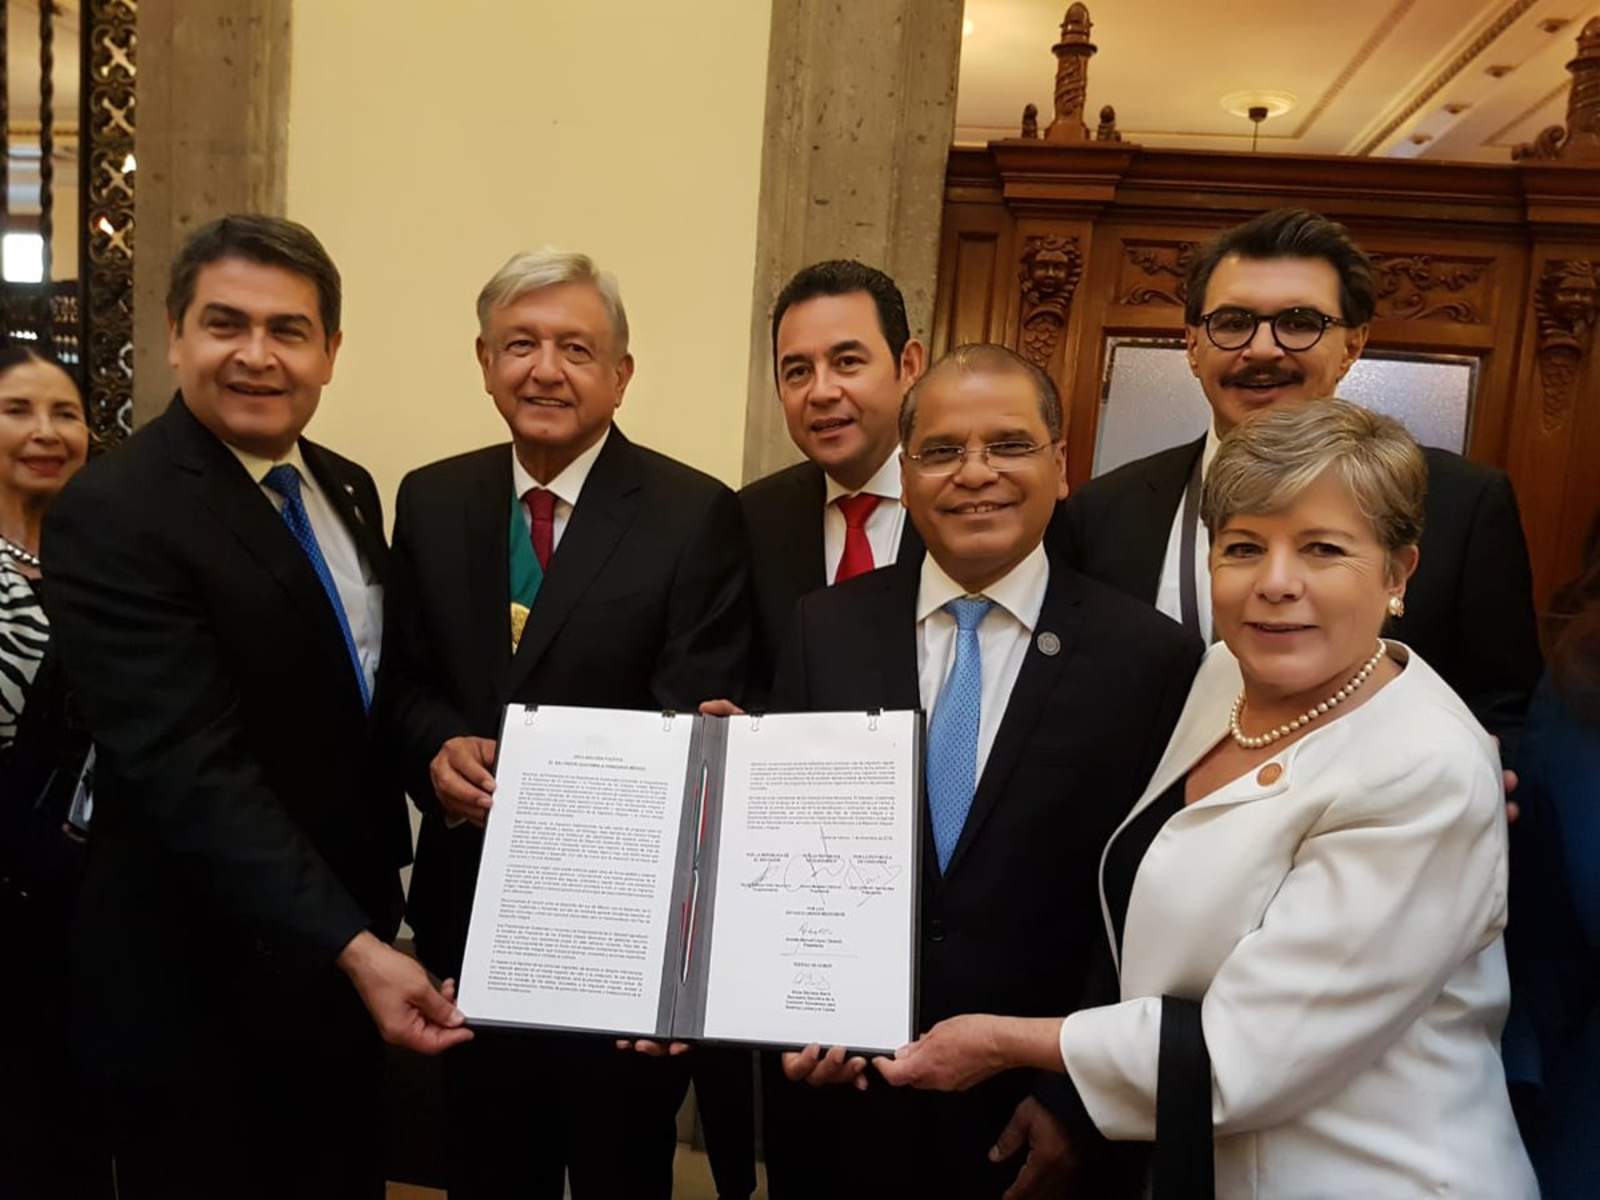 Los presidentes de México, Guatemala, Honduras y El Salvador, firmaron un acuerdo para buscar formas de reducir las migraciones. (Foto Prensa Libre: Tomada de Twitter)